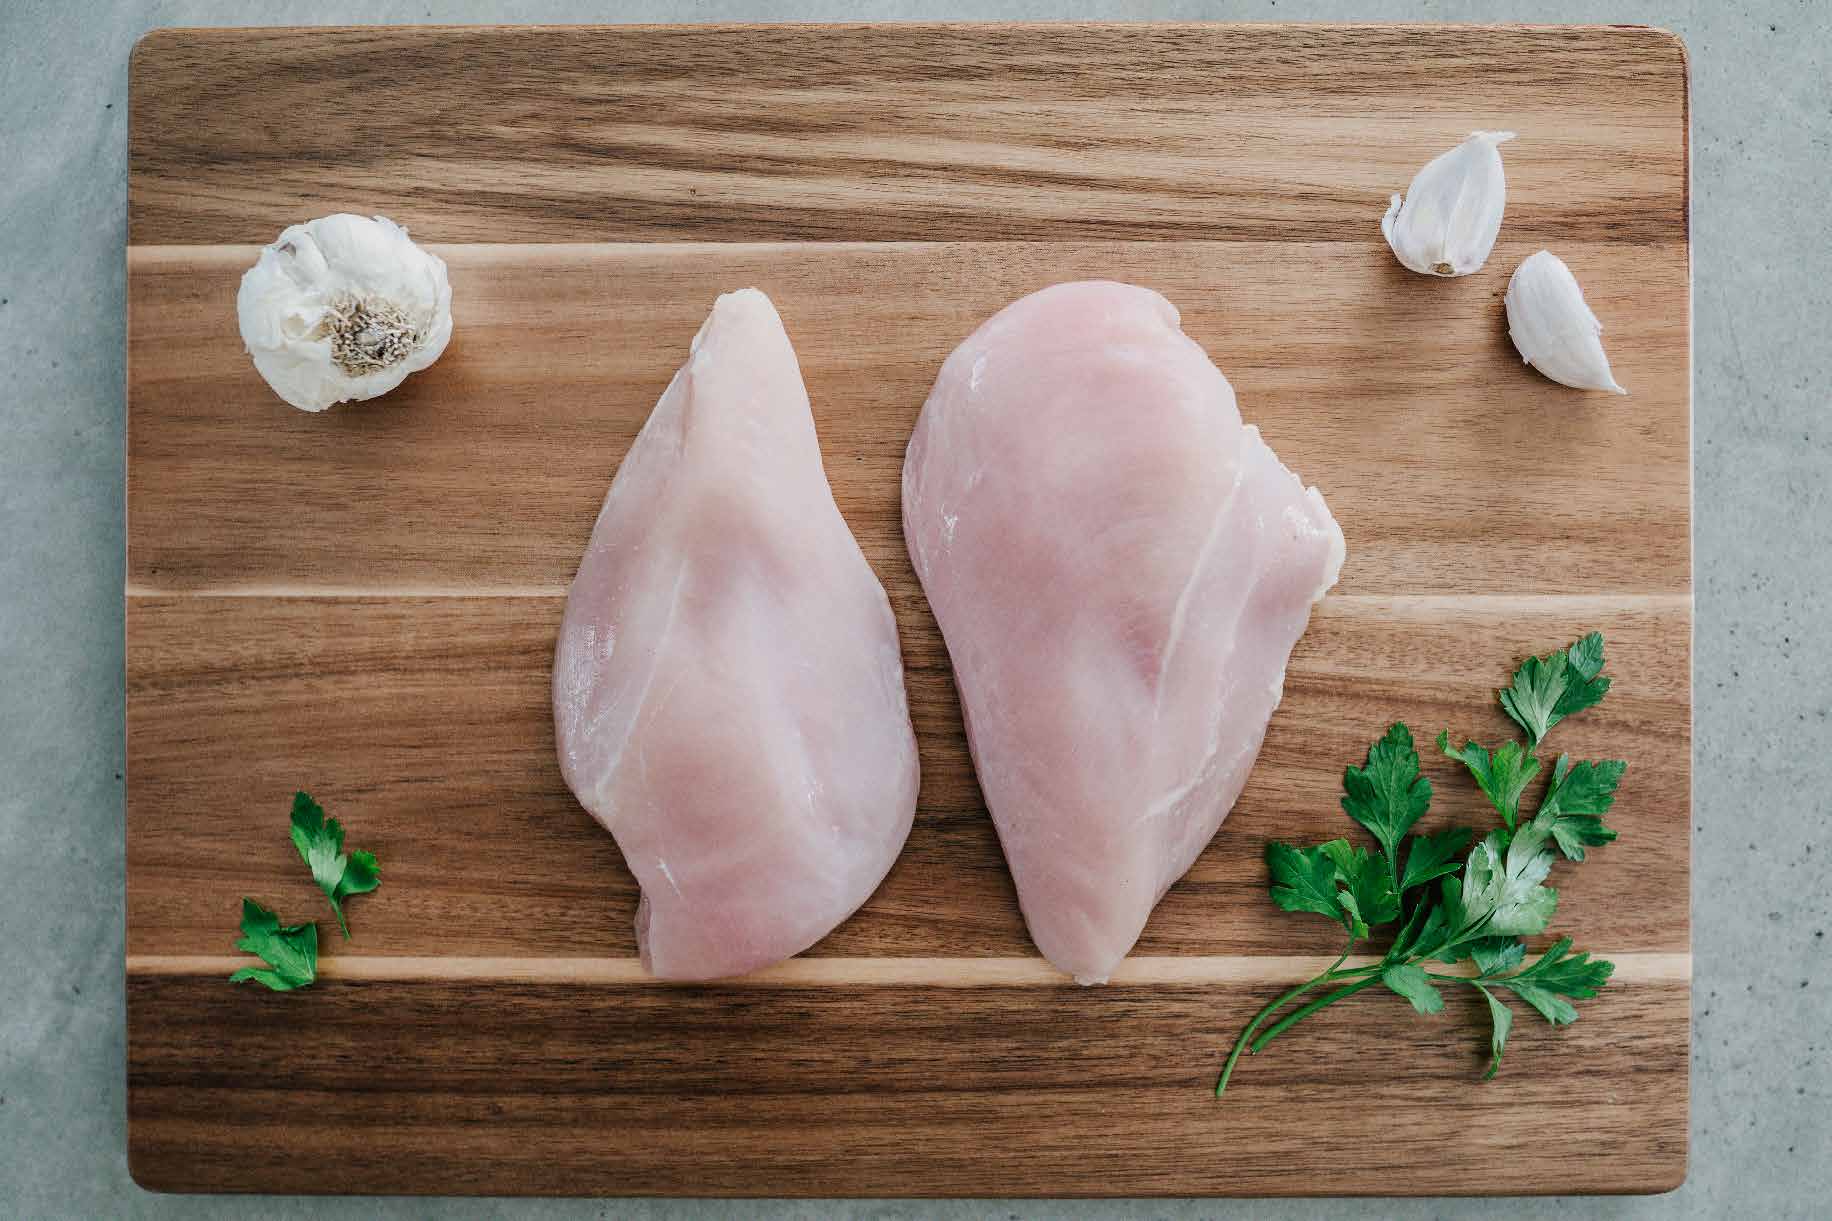 Boneless Skinless Chicken Breast – Pasturebird